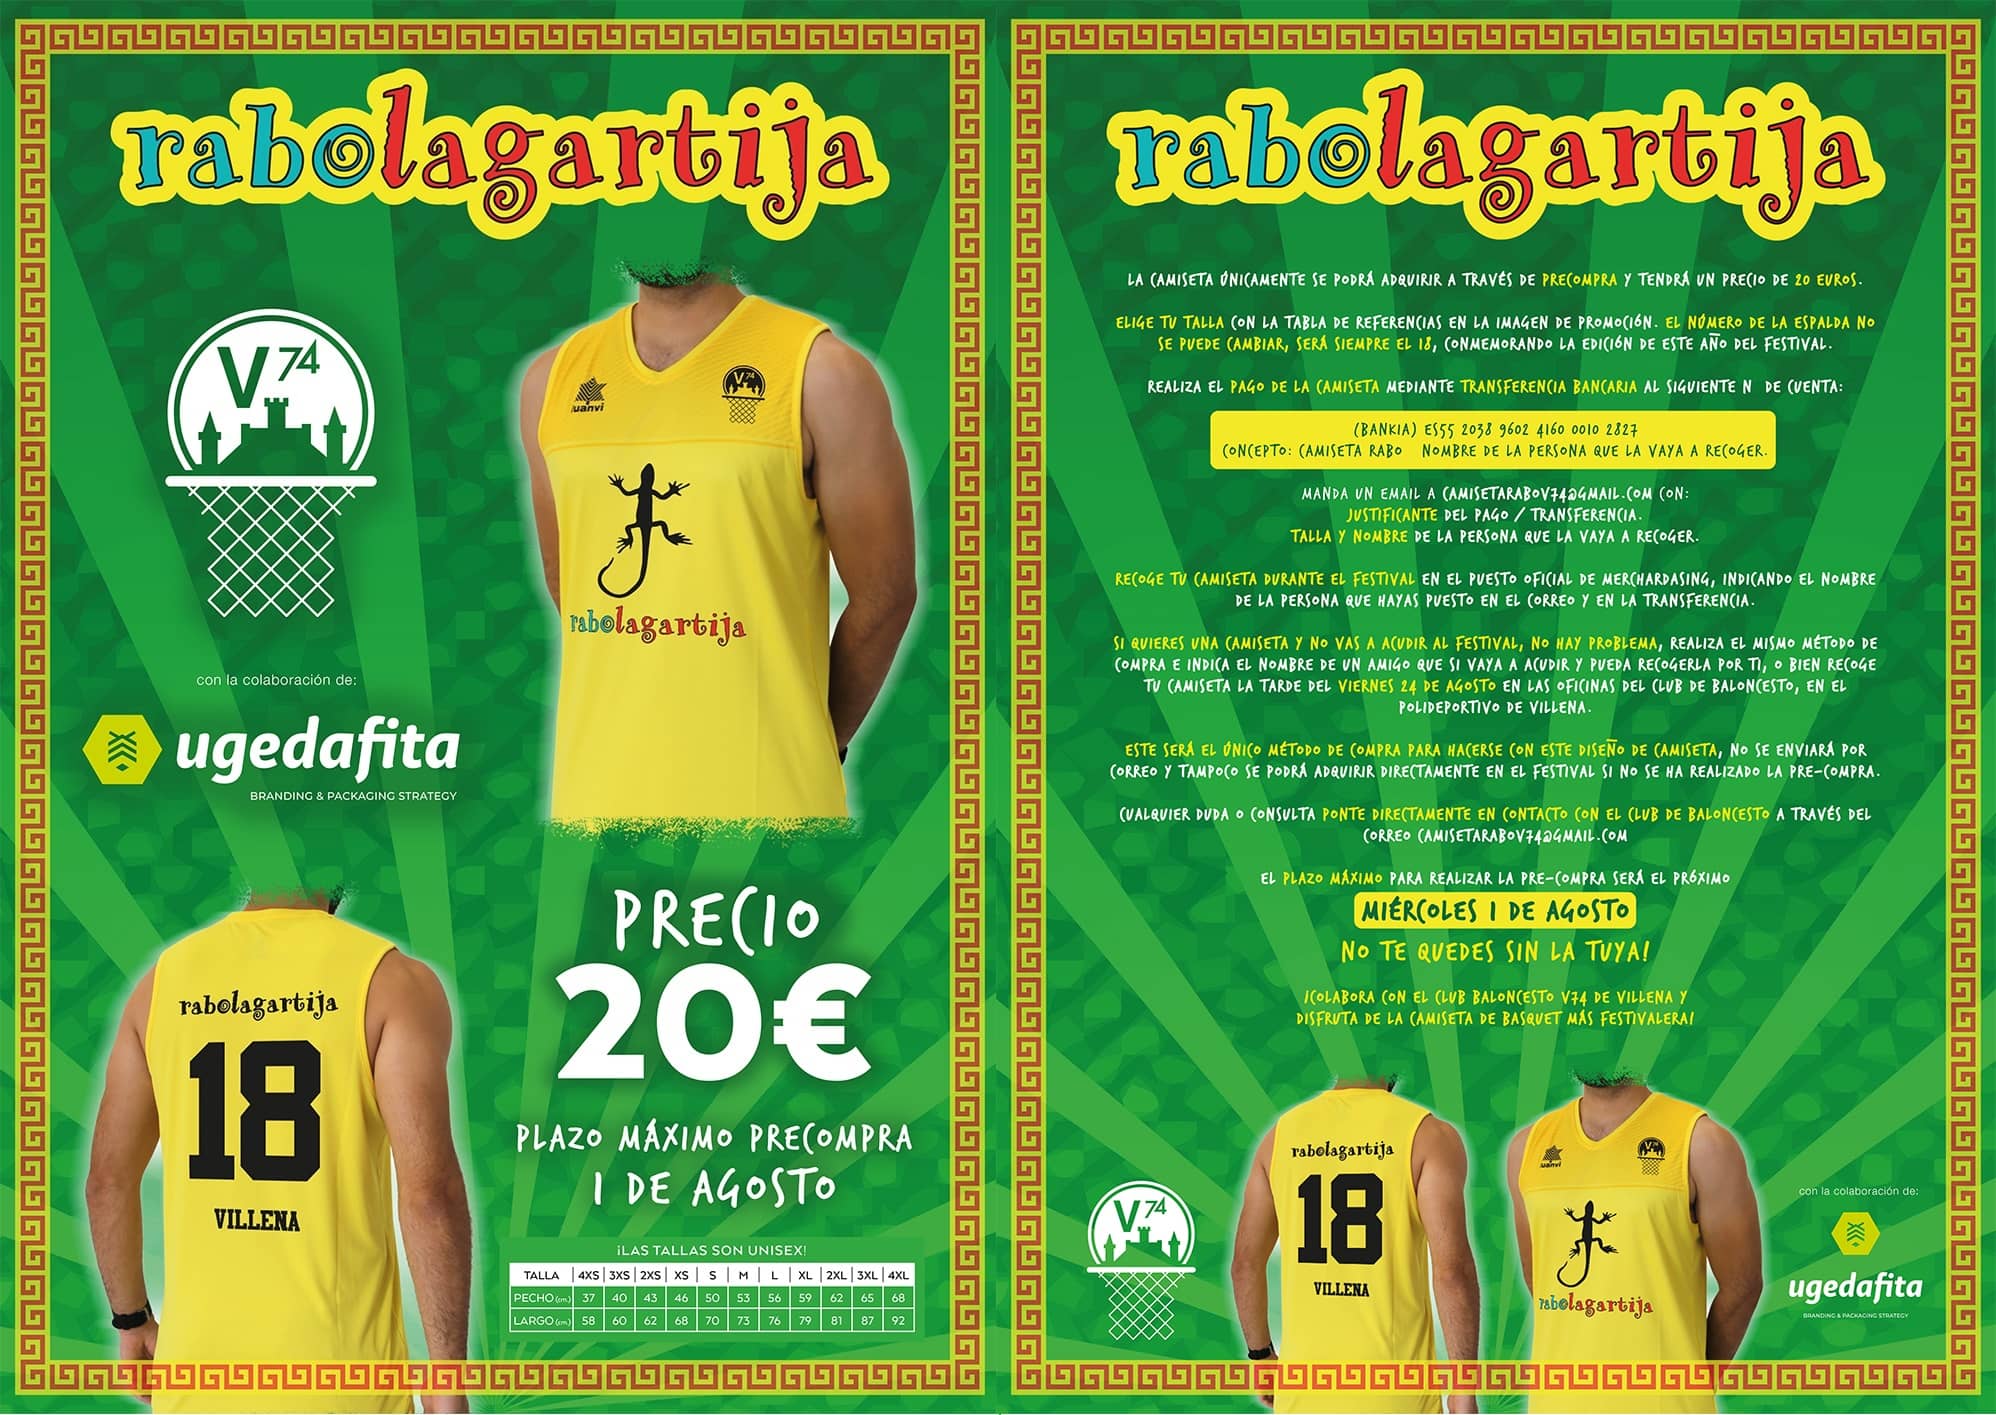 Sacan una edición especial de camisetas de Baloncesto de los festivales Rabolagartija y Leyendas del Rock